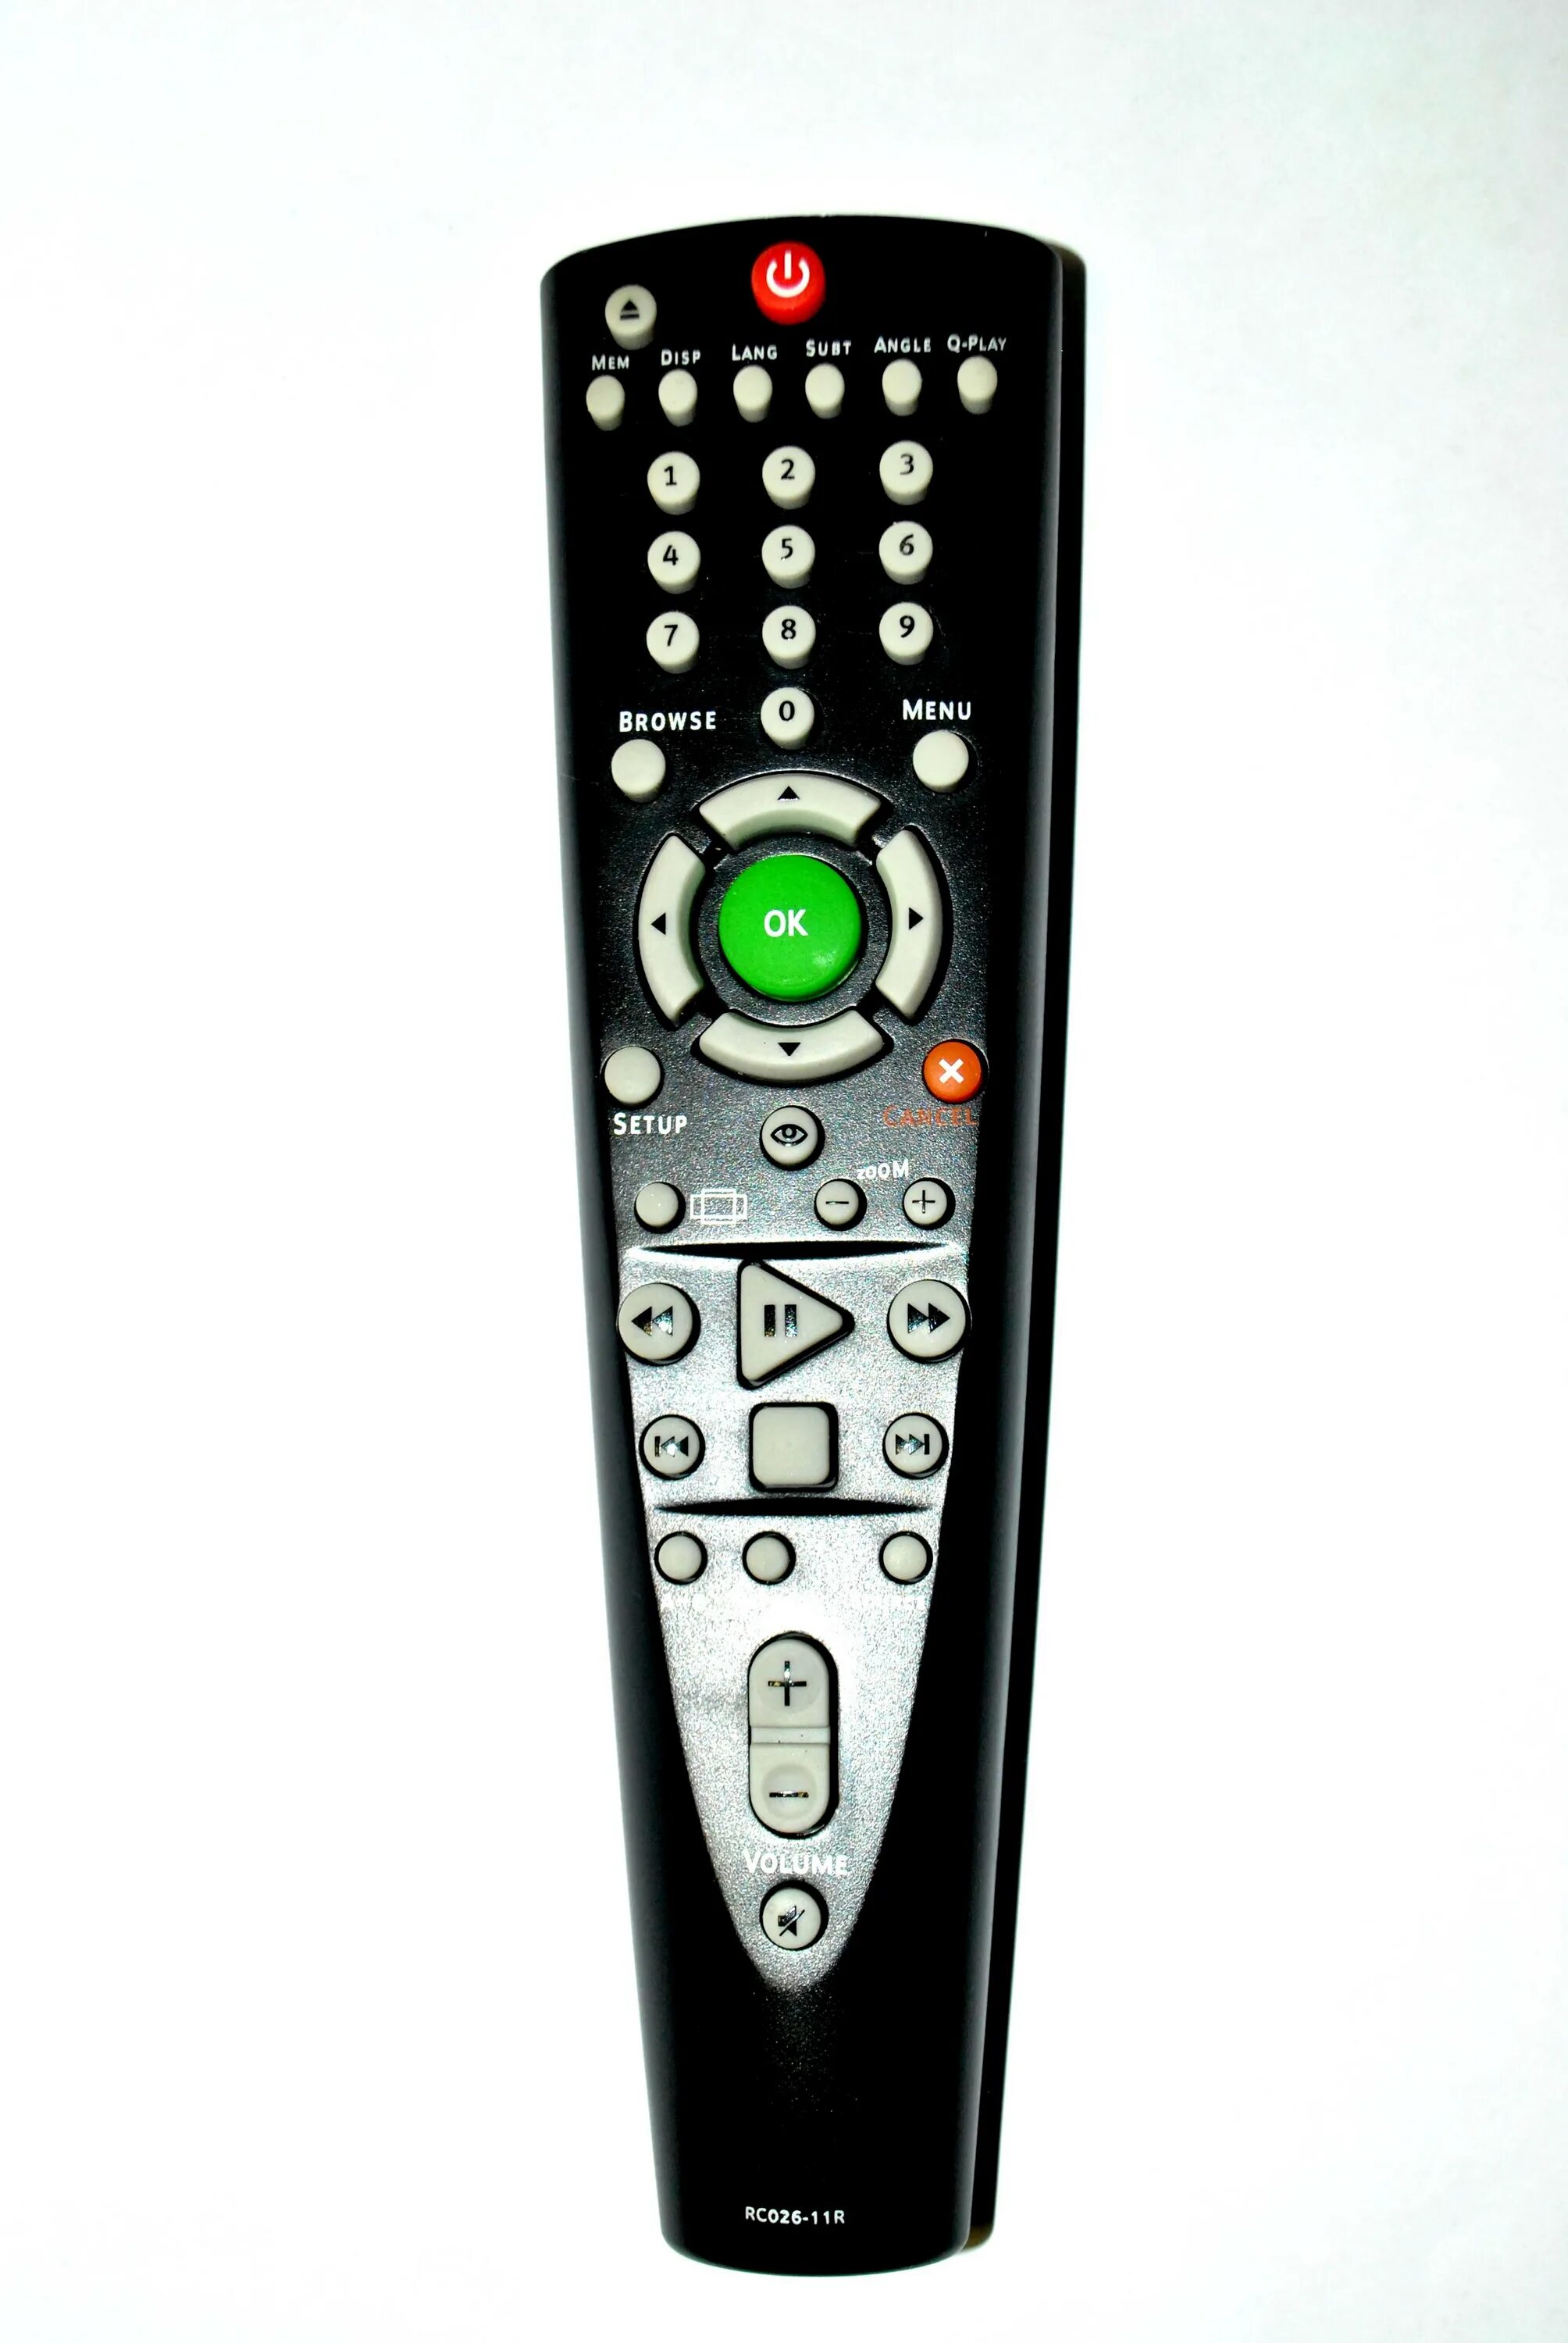 BBK RC-026-01r (DVD) пульт Ду. Пульт дистанционного управления для BBK rc026-11r DVD /orig. Пульт для DVD BBK. Пульт для двд BBK. Bbk пульт на телефон